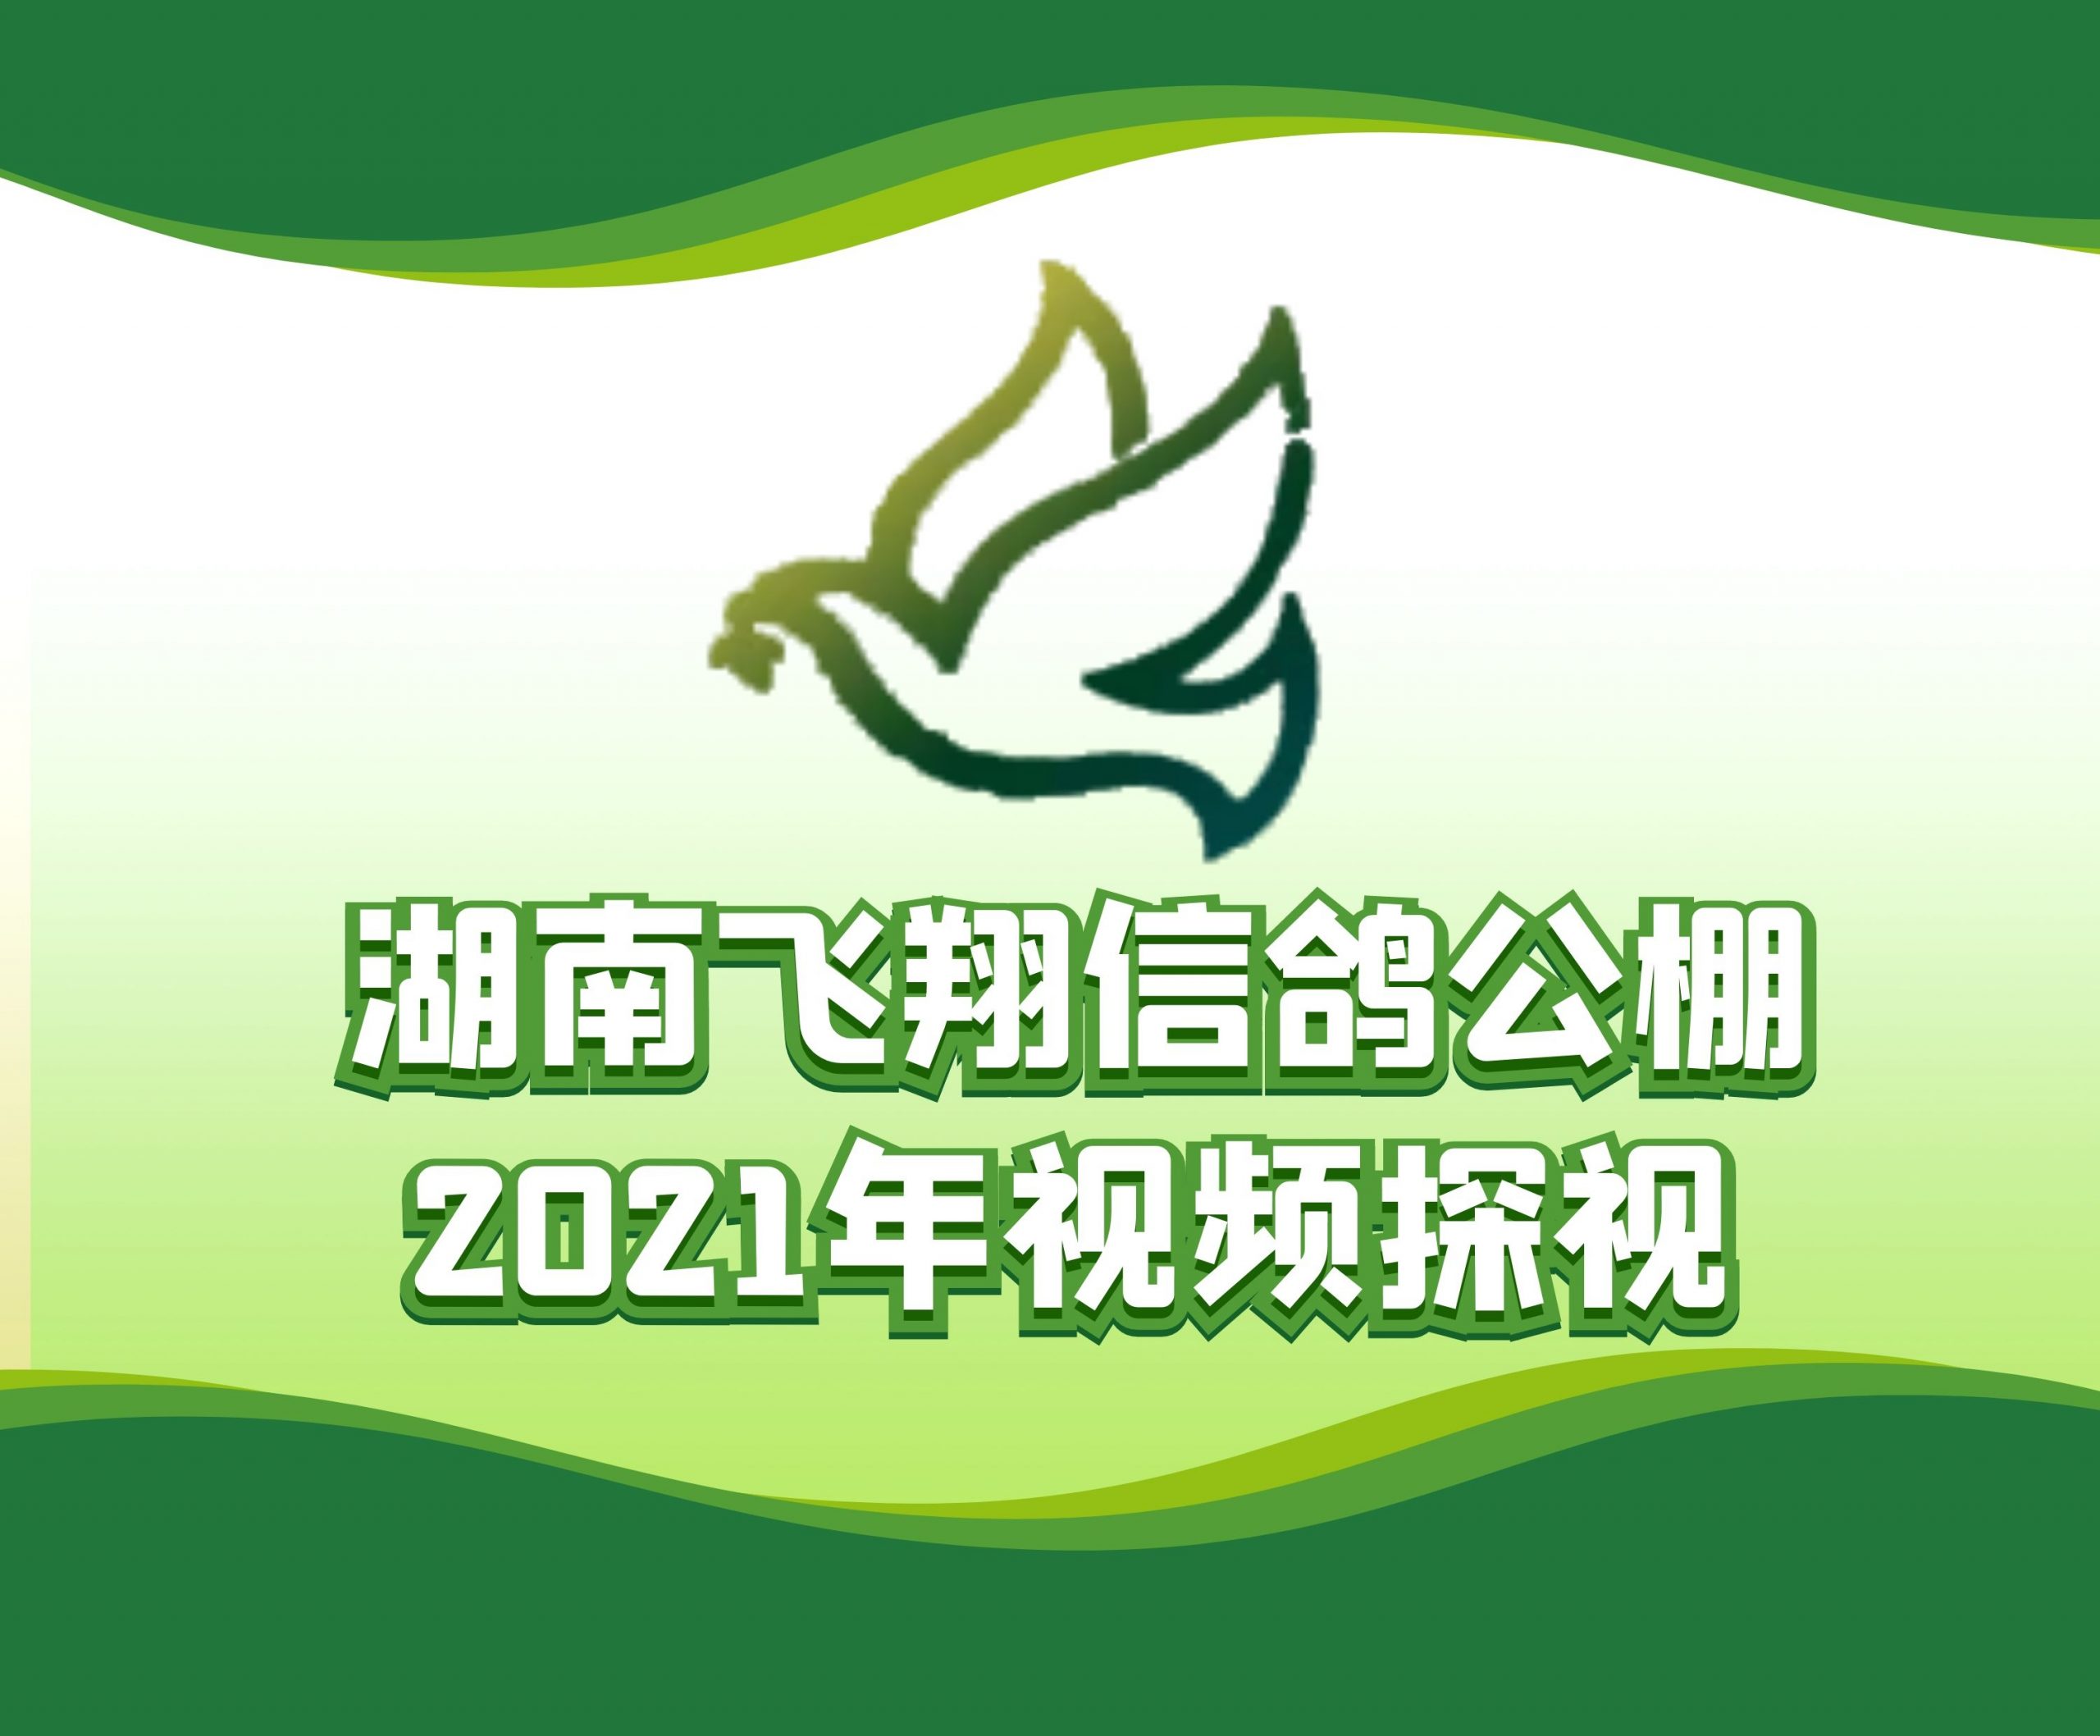 盛辉特-吴石鸽-2021-14-0126149